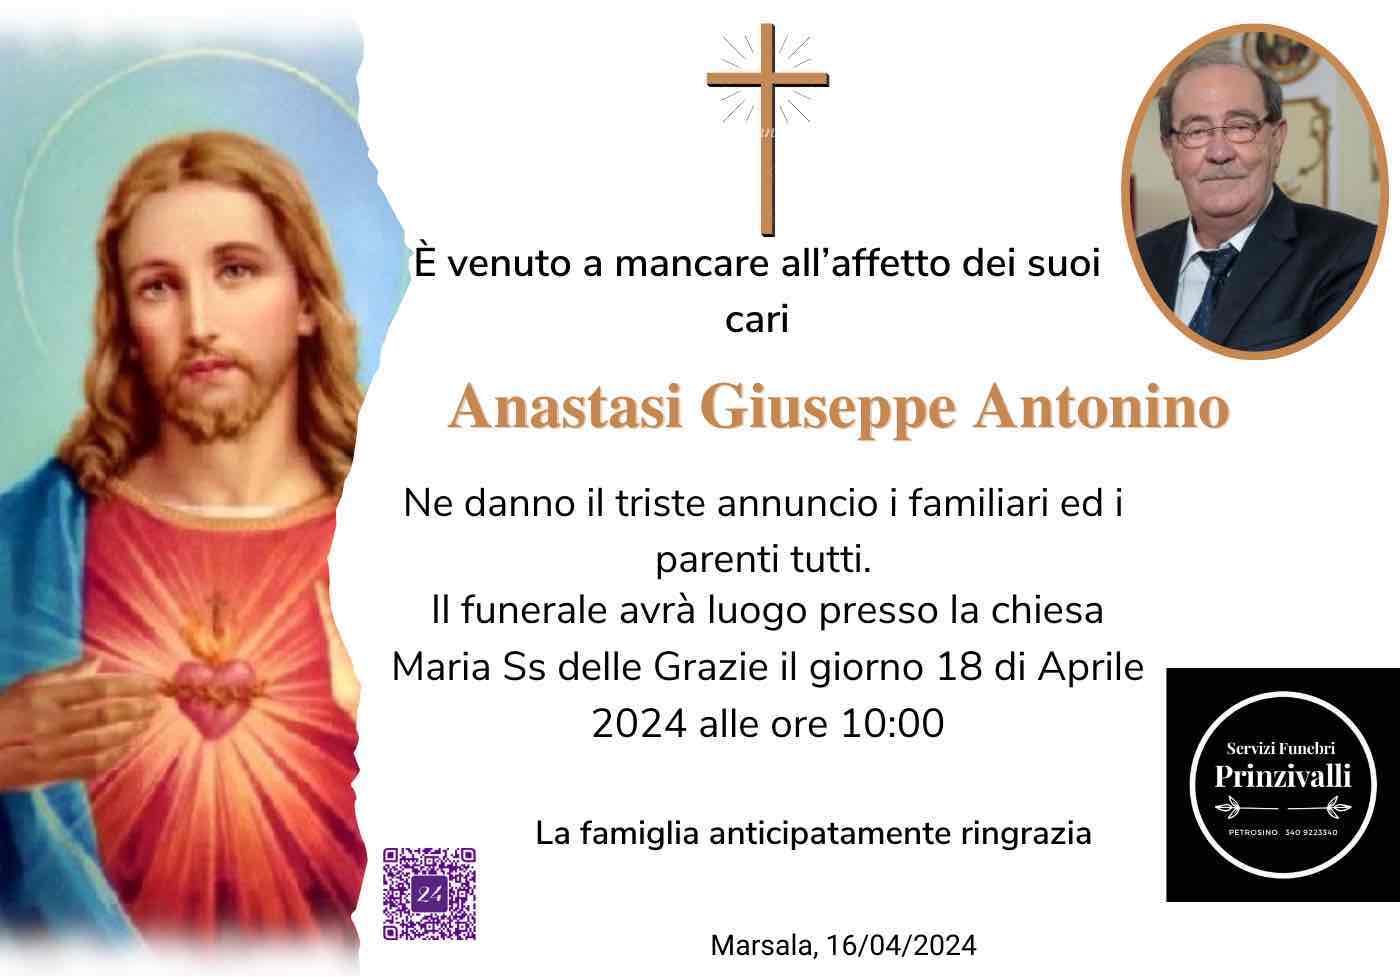 Giuseppe Antonino Anastasi